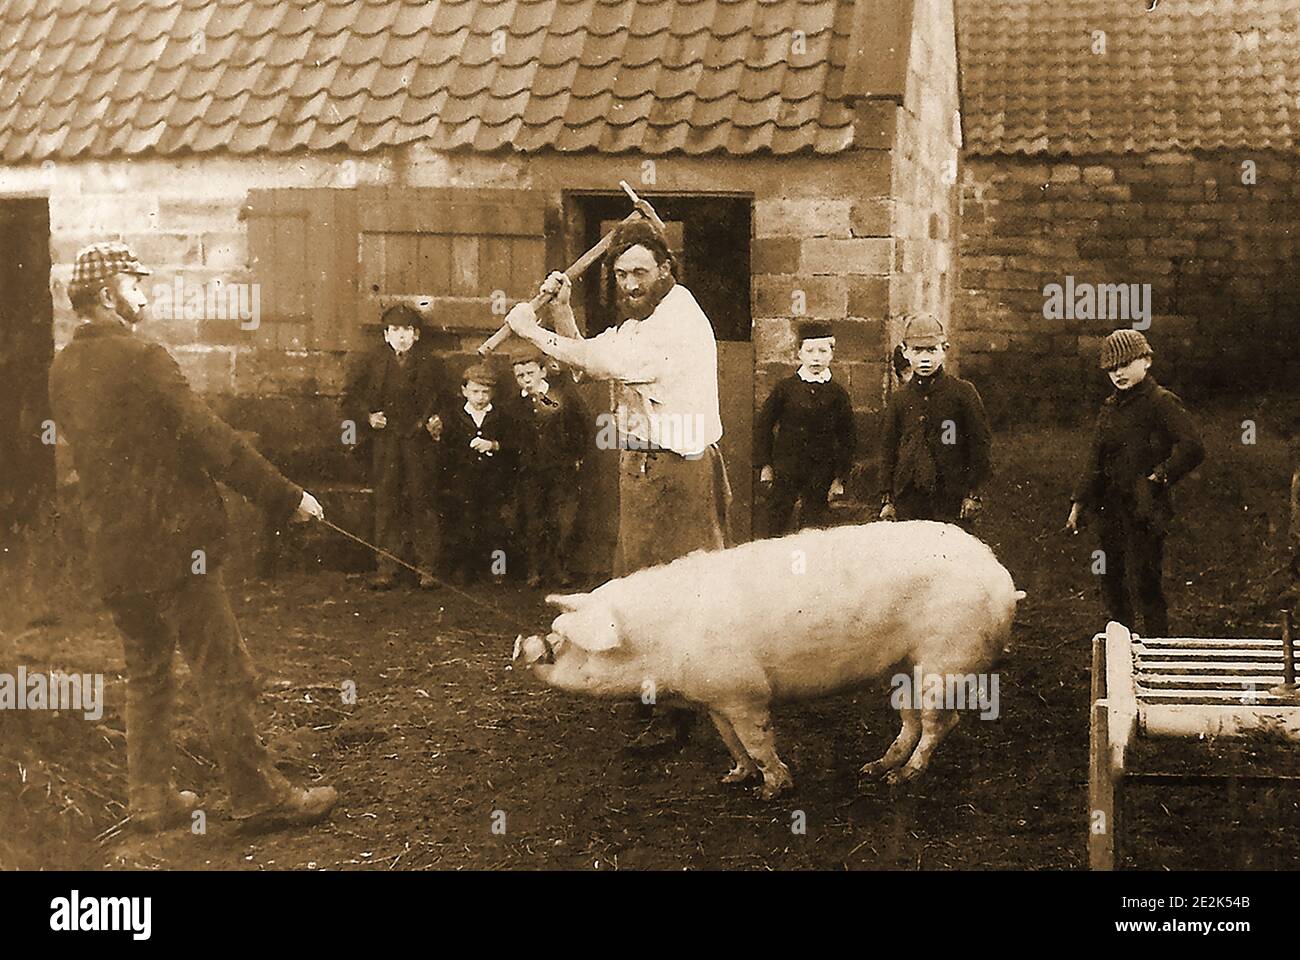 Ein Foto von etwa 1900 von einem Schwein, das in einem Dorf in der Nähe von Whitby, Yorkshire, Großbritannien, getötet wurde. Obwohl Gory zu modernen Augen, war es einmal ein allgemeiner Anblick in den Tagen vor modernen Schlachthöfen. Es ist interessant zu sehen, dass die Kinder mehr an dem Fotografen und seiner Kamera interessiert sind als an der Tötung des Schweins, die er wahrscheinlich schon viele Male zuvor gesehen hatte. Stockfoto